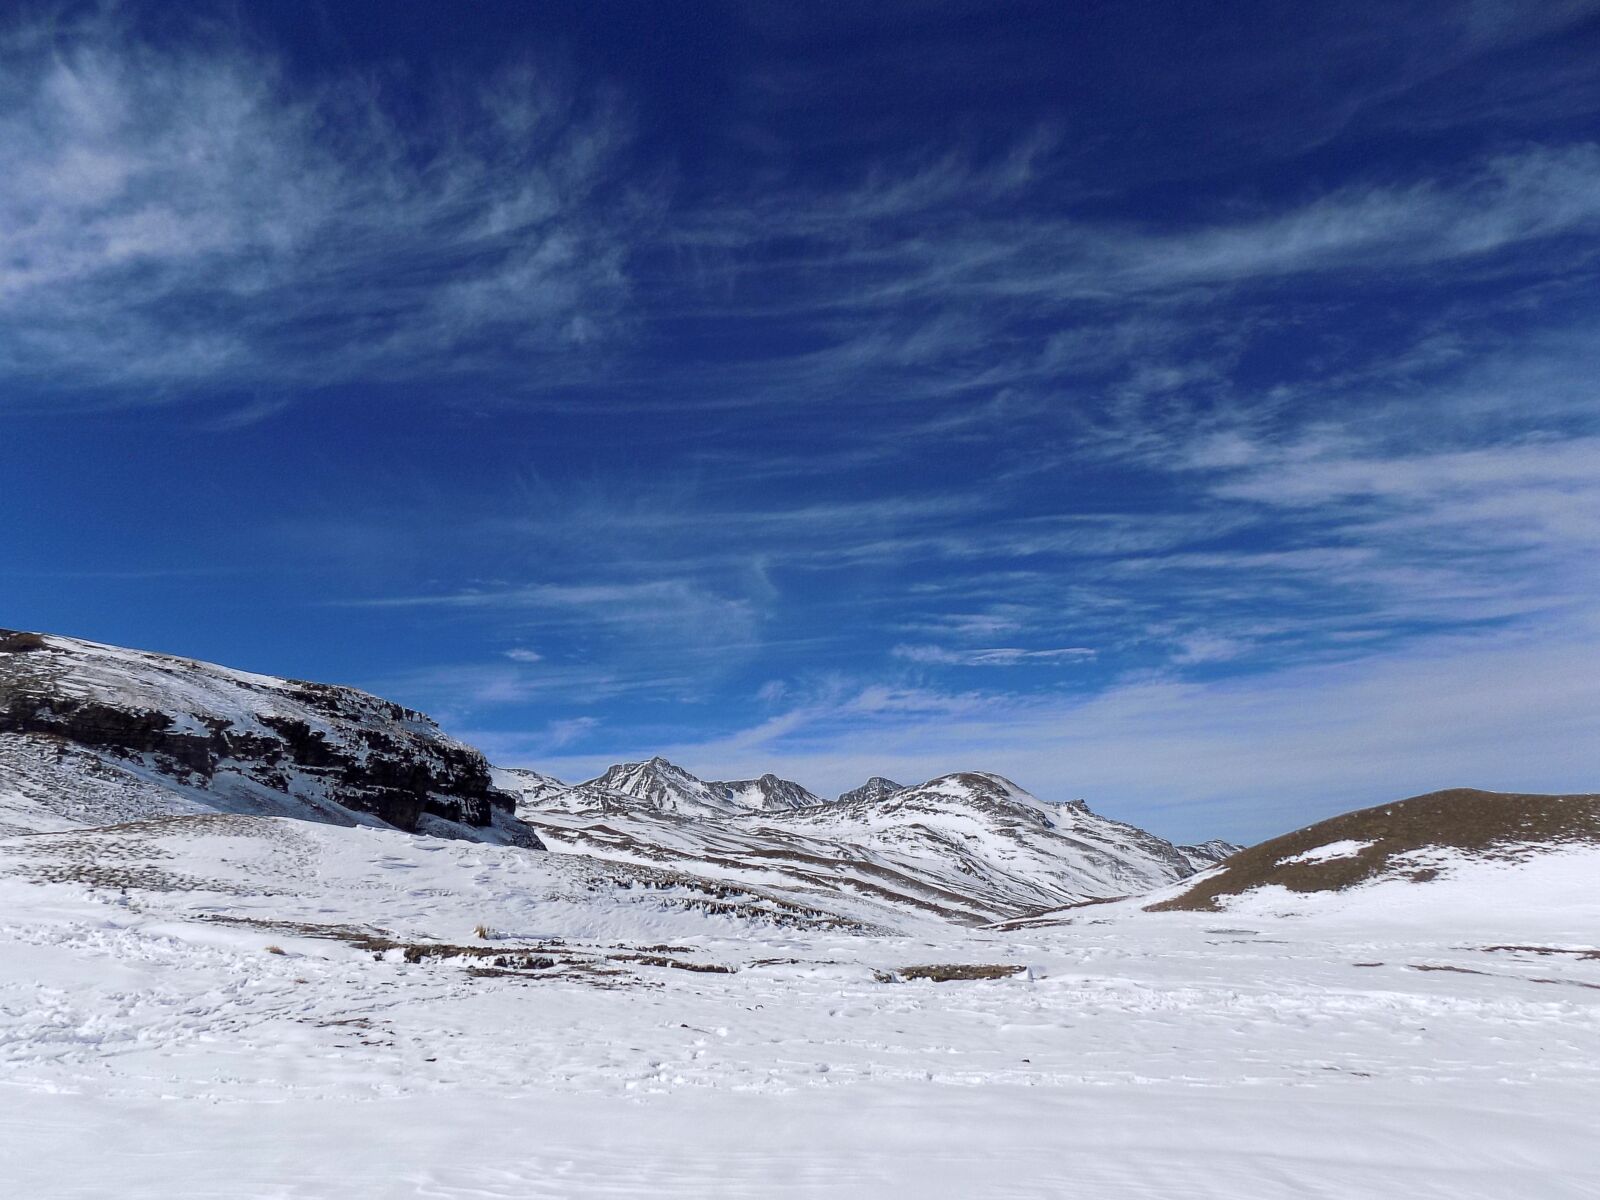 Nikon COOLPIX L330 sample photo. Landscape, mountains, snow photography